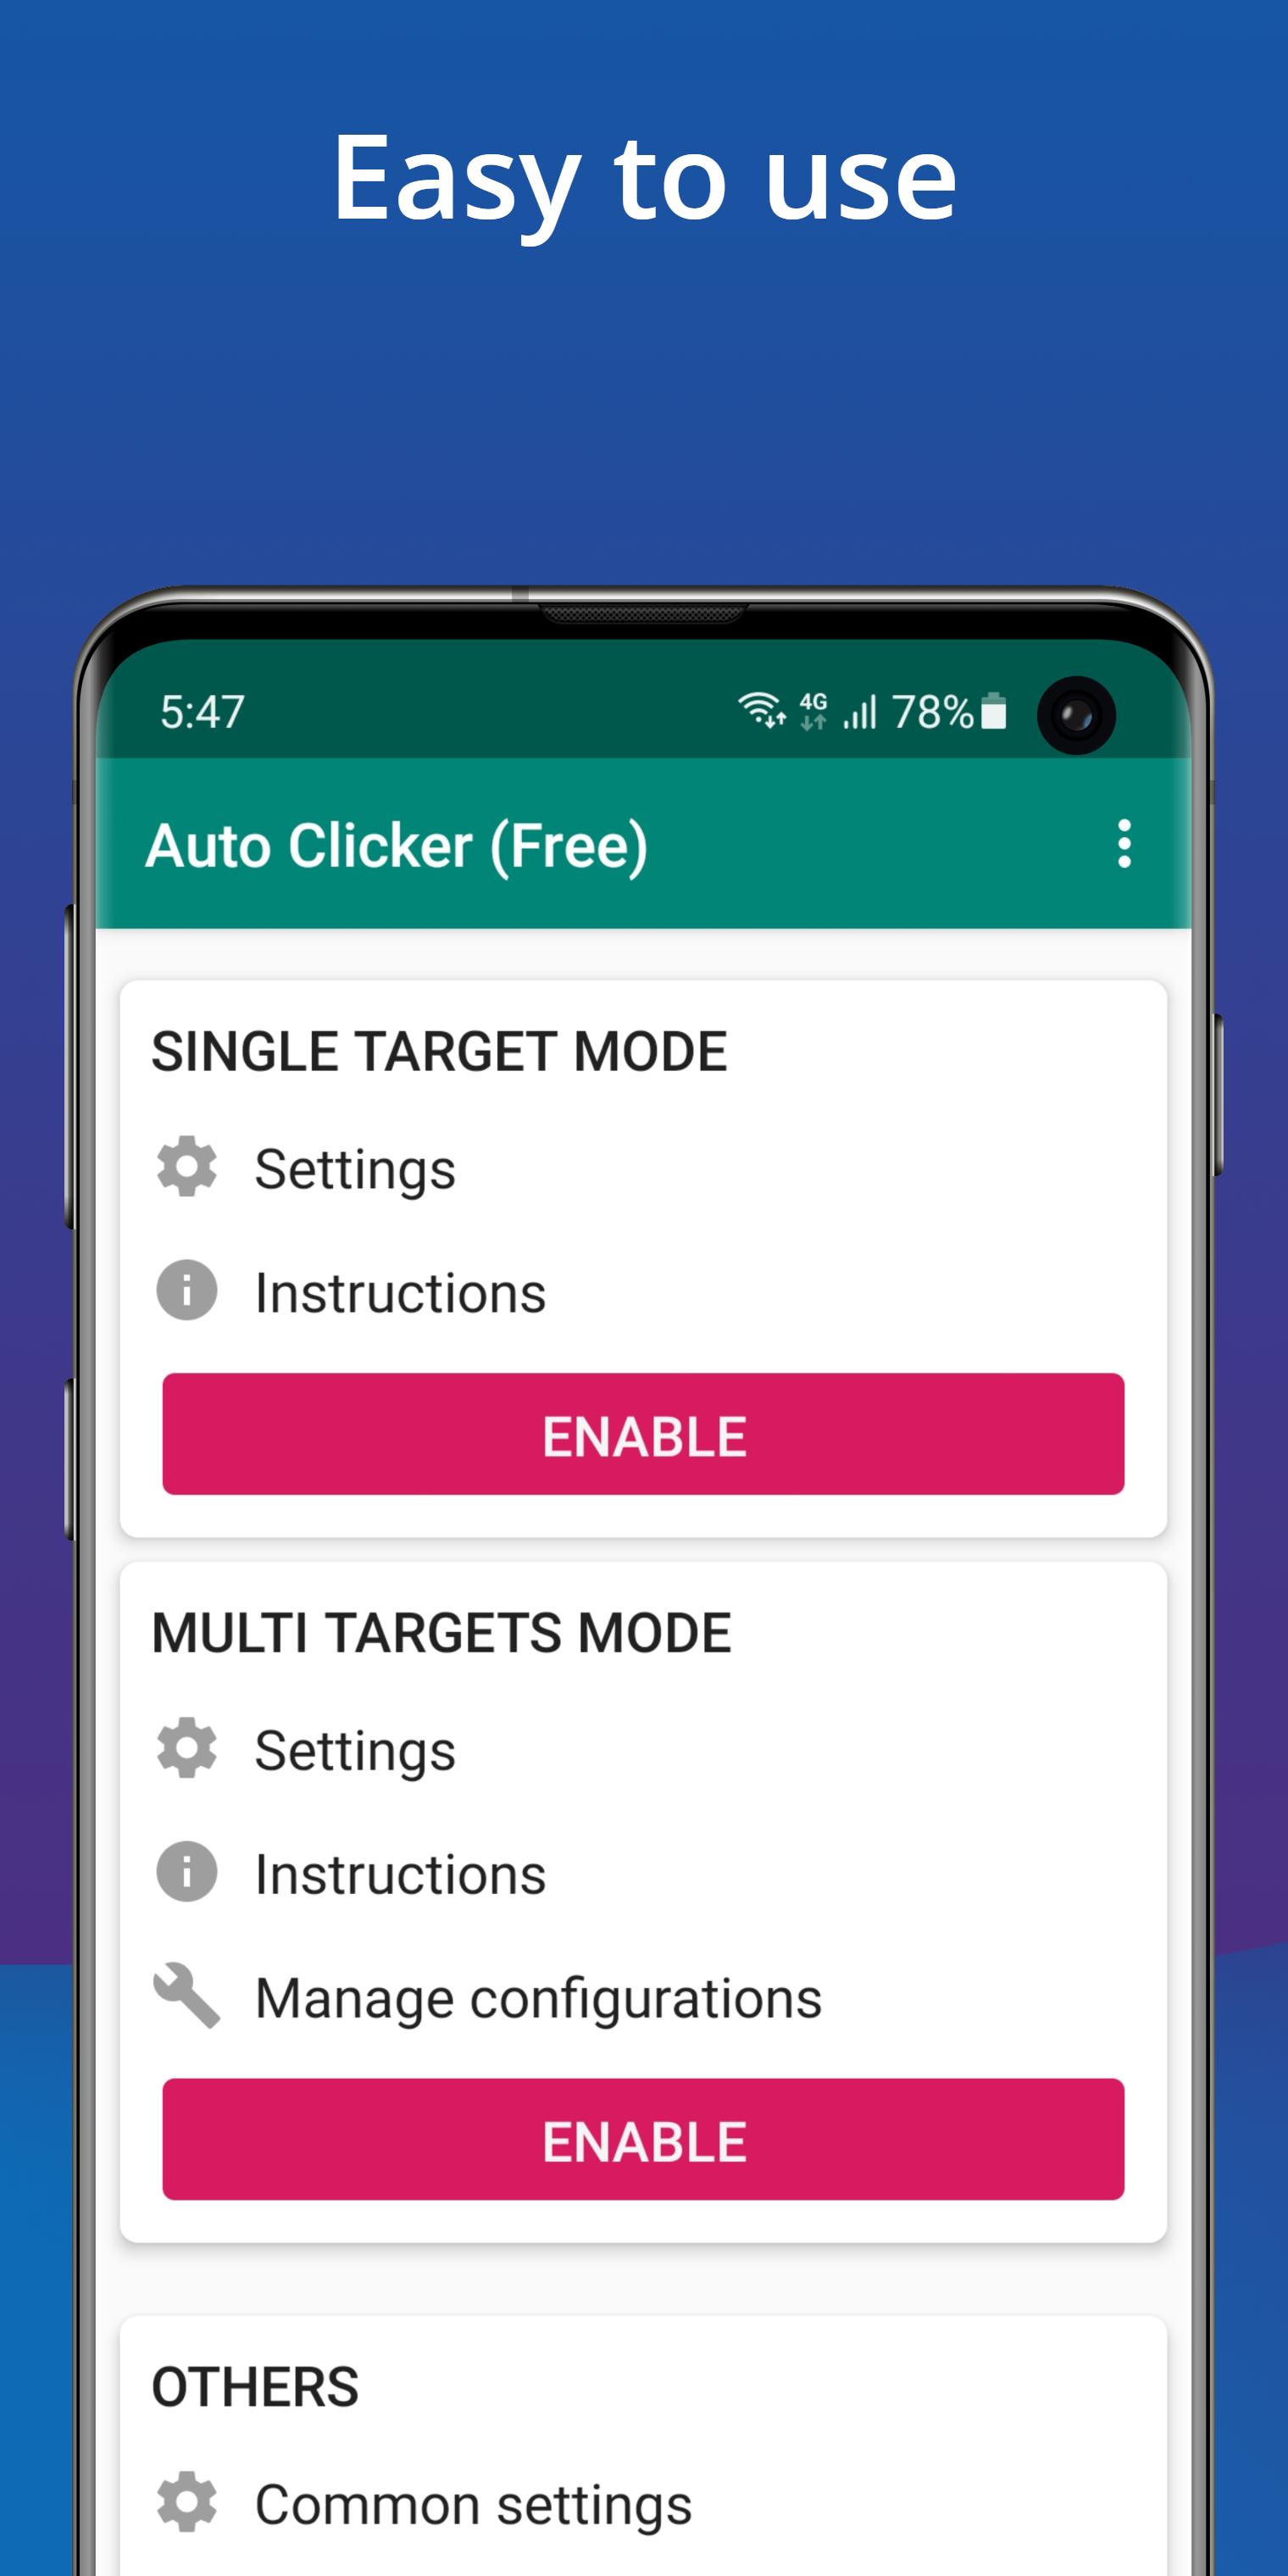 Auto Clicker - Auto Tapper & E for Android - Download